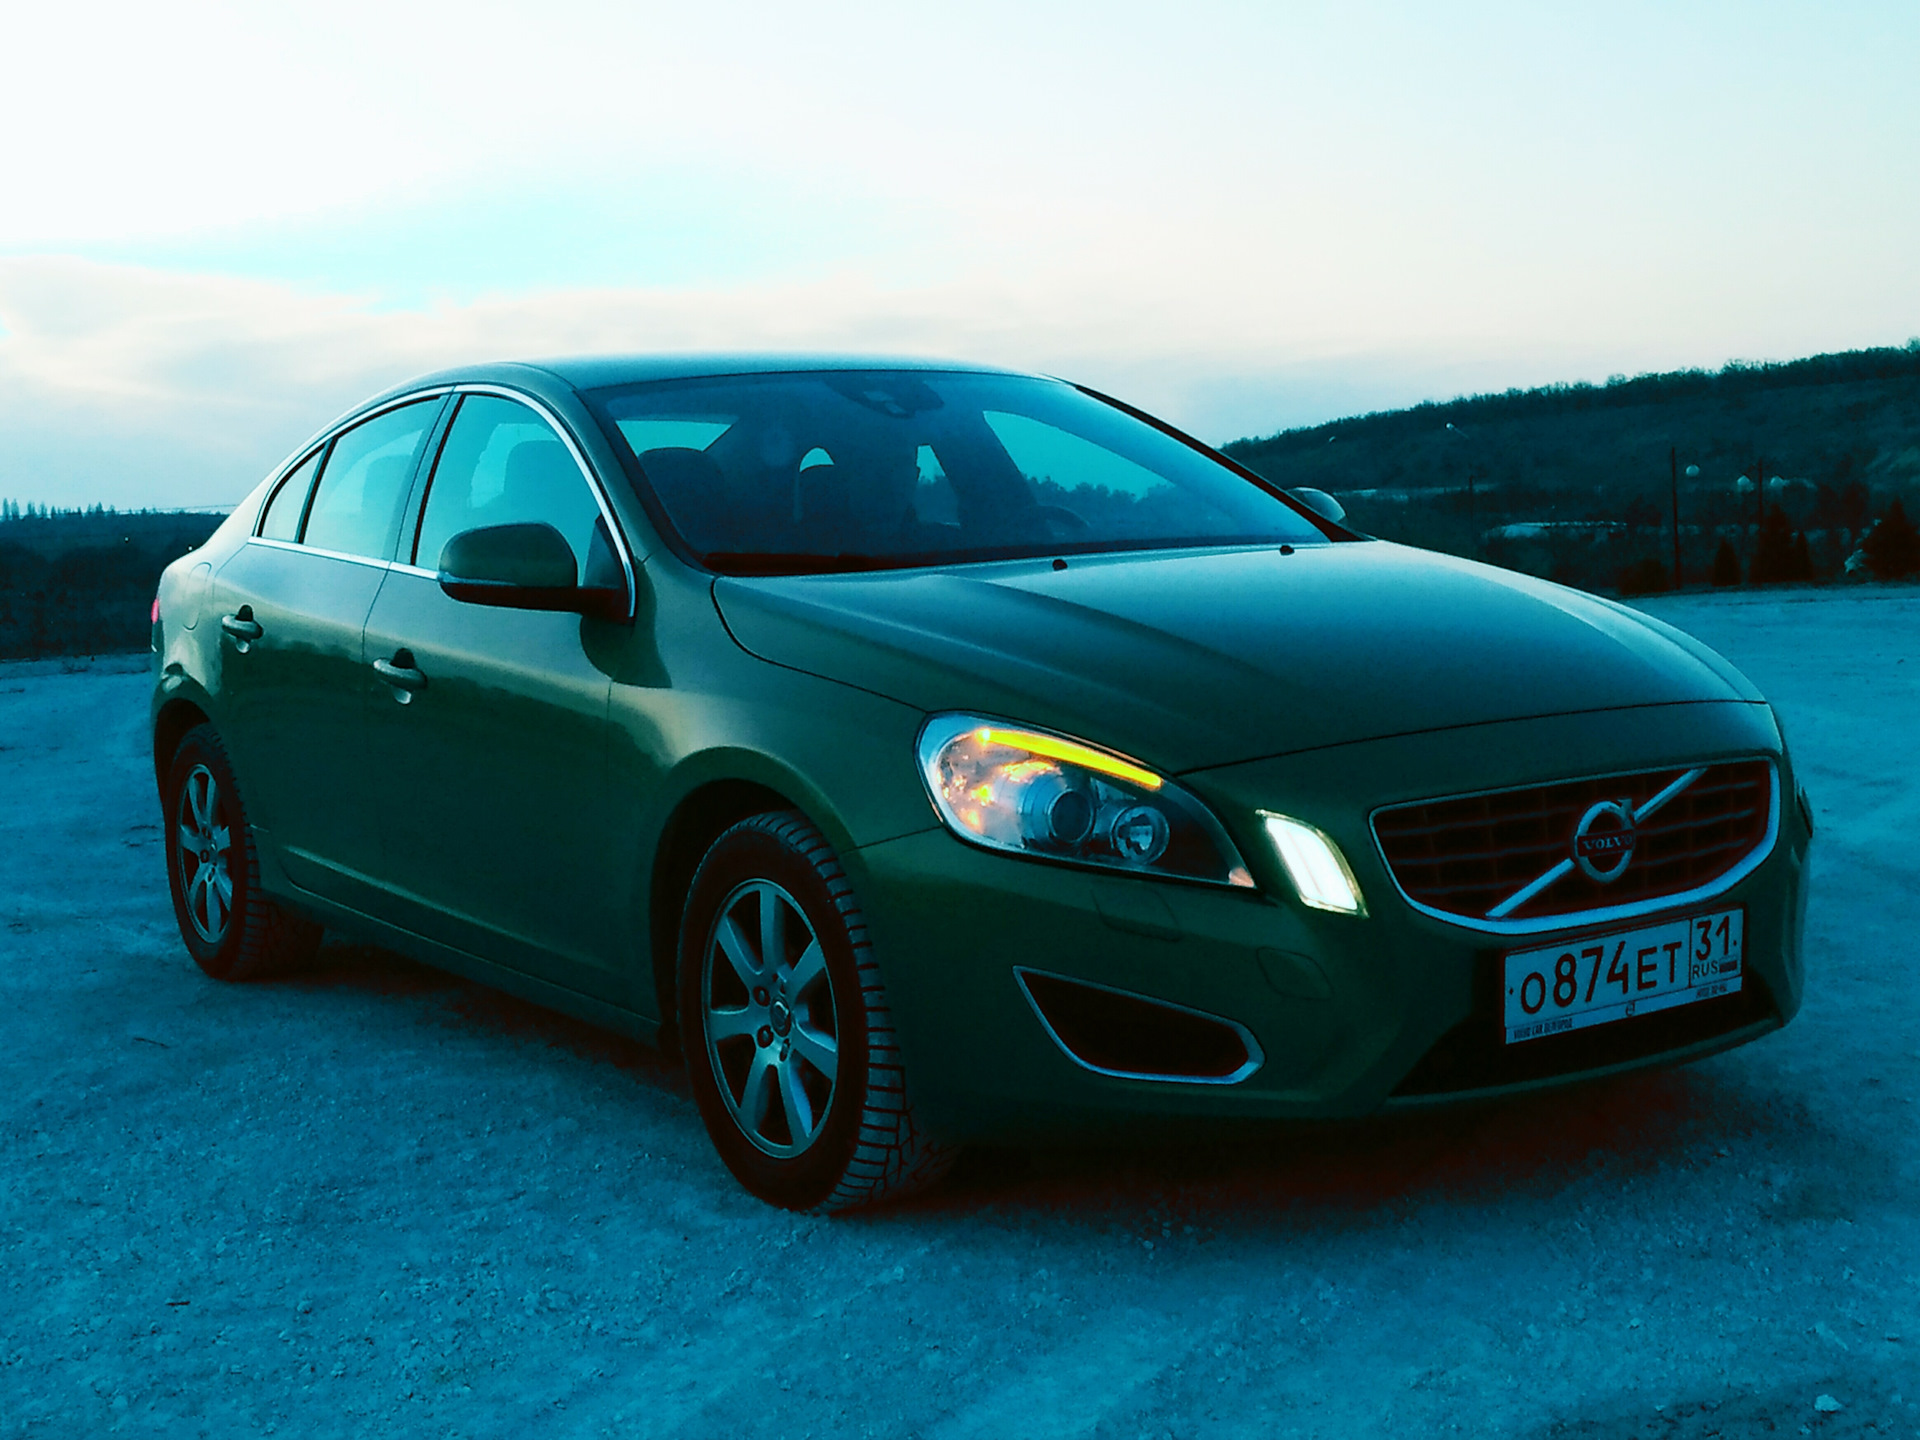 Volvo s60 2.0. Volvo s60 2012. Вольво s60 2012. Вольво s60 зеленая. Volvo s60 2g.